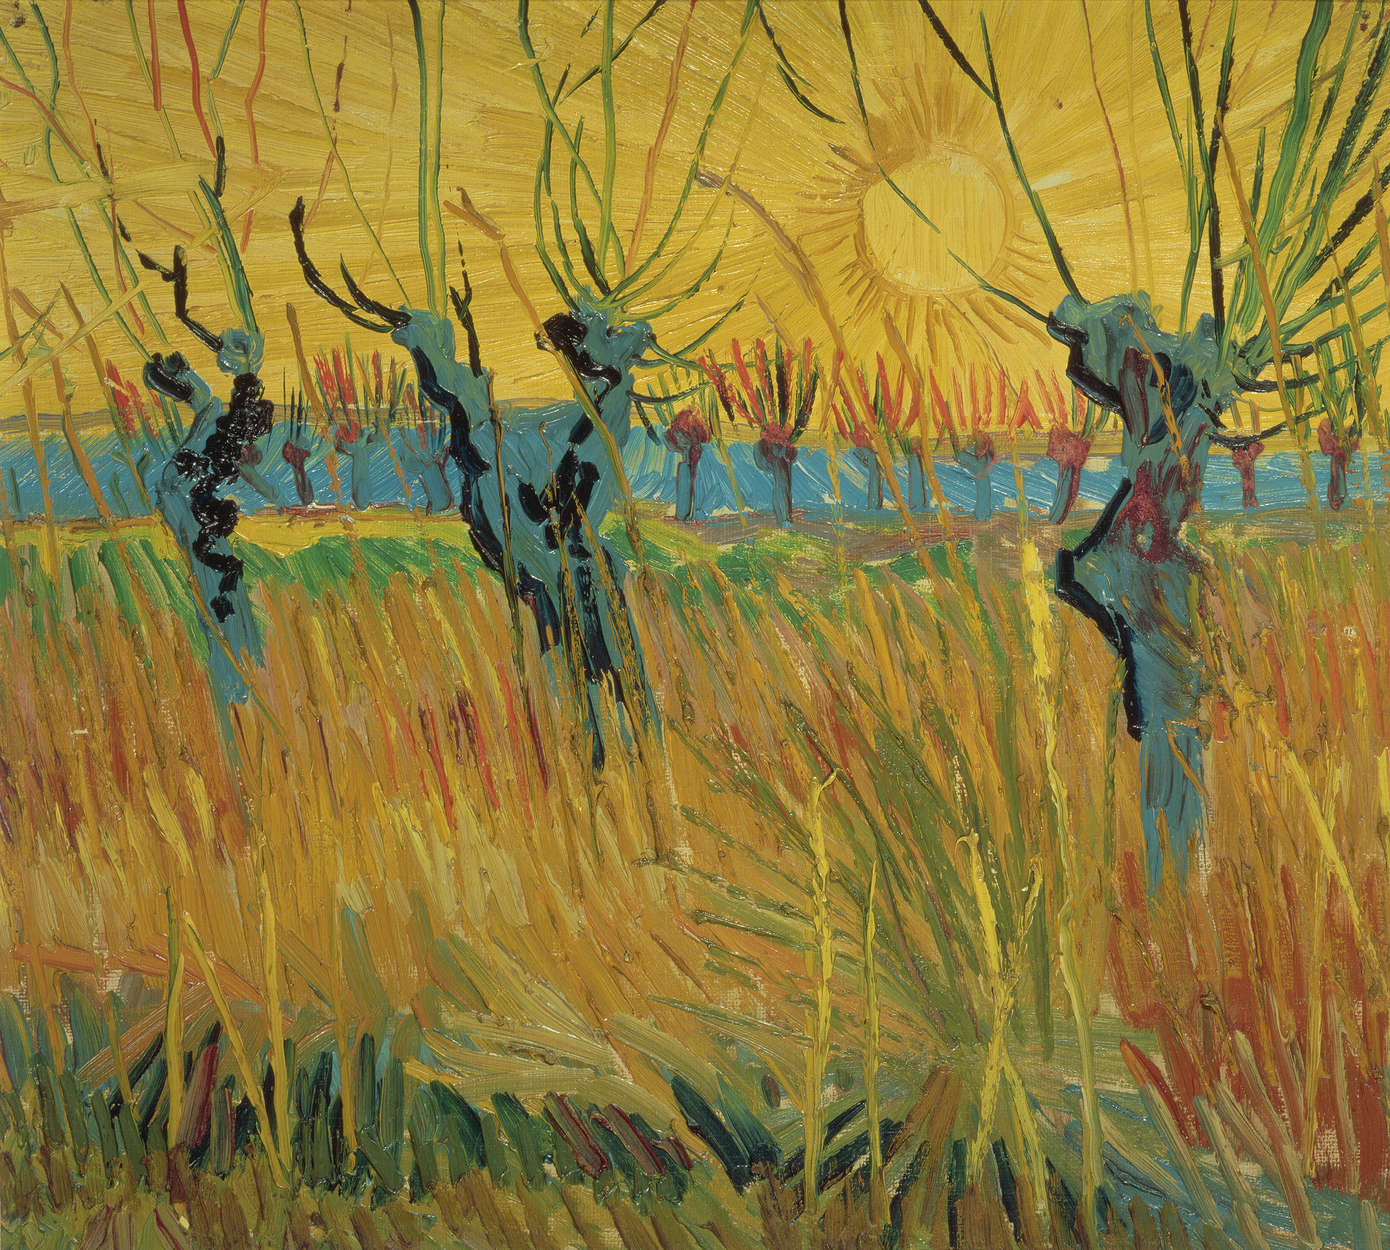             Fototapete "Weiden bei Sonnenuntergang" von Vincent van Gogh
        